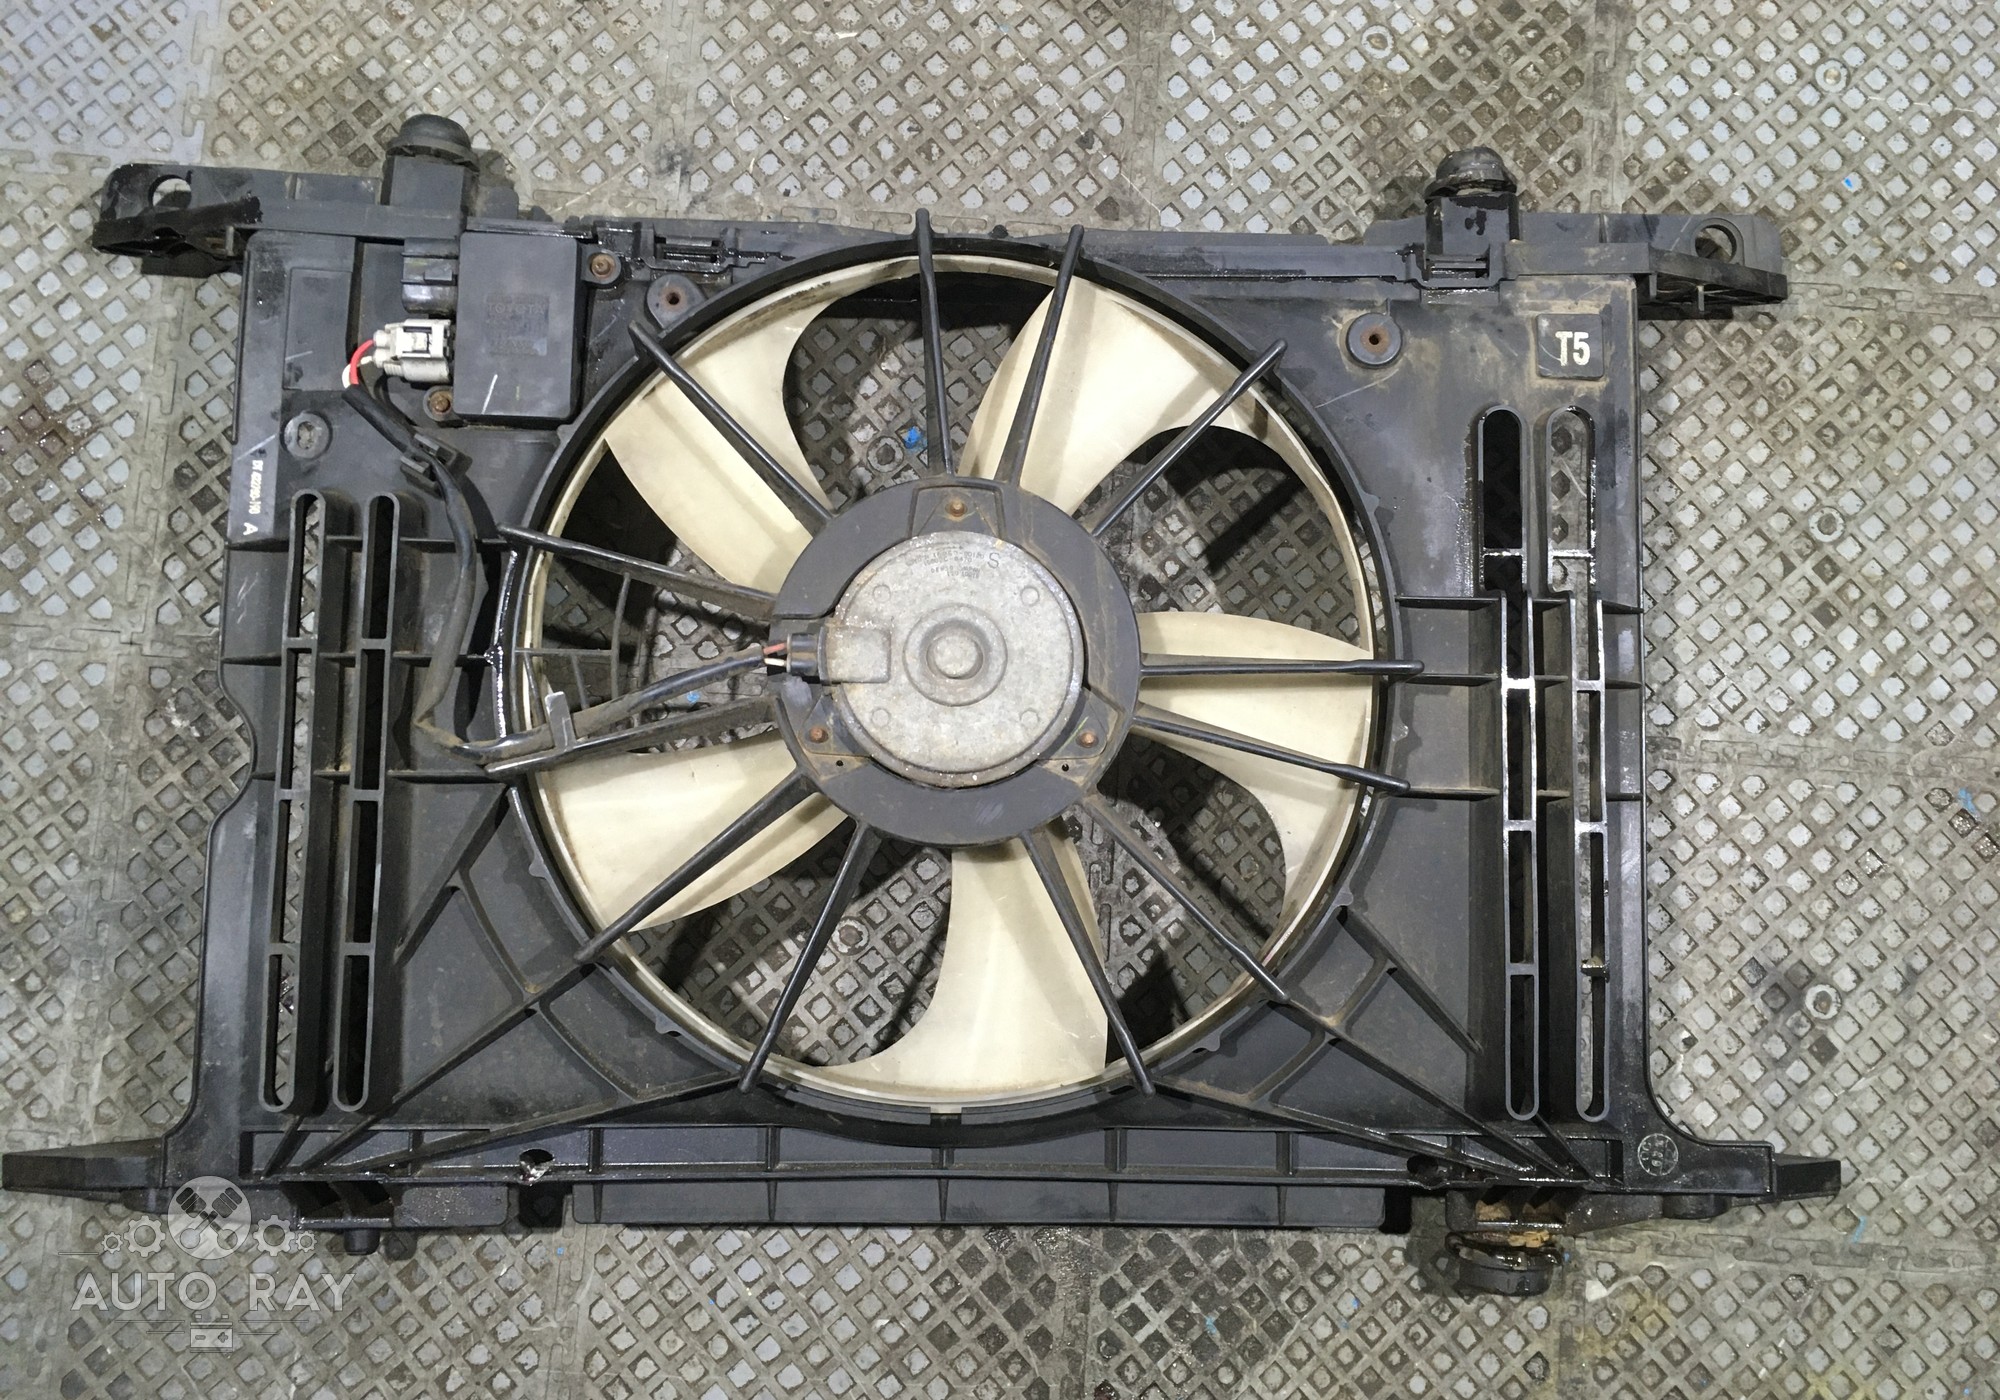 167110D190 Вентилятор радиатора для Toyota Corolla E160/E170 (с 2012)